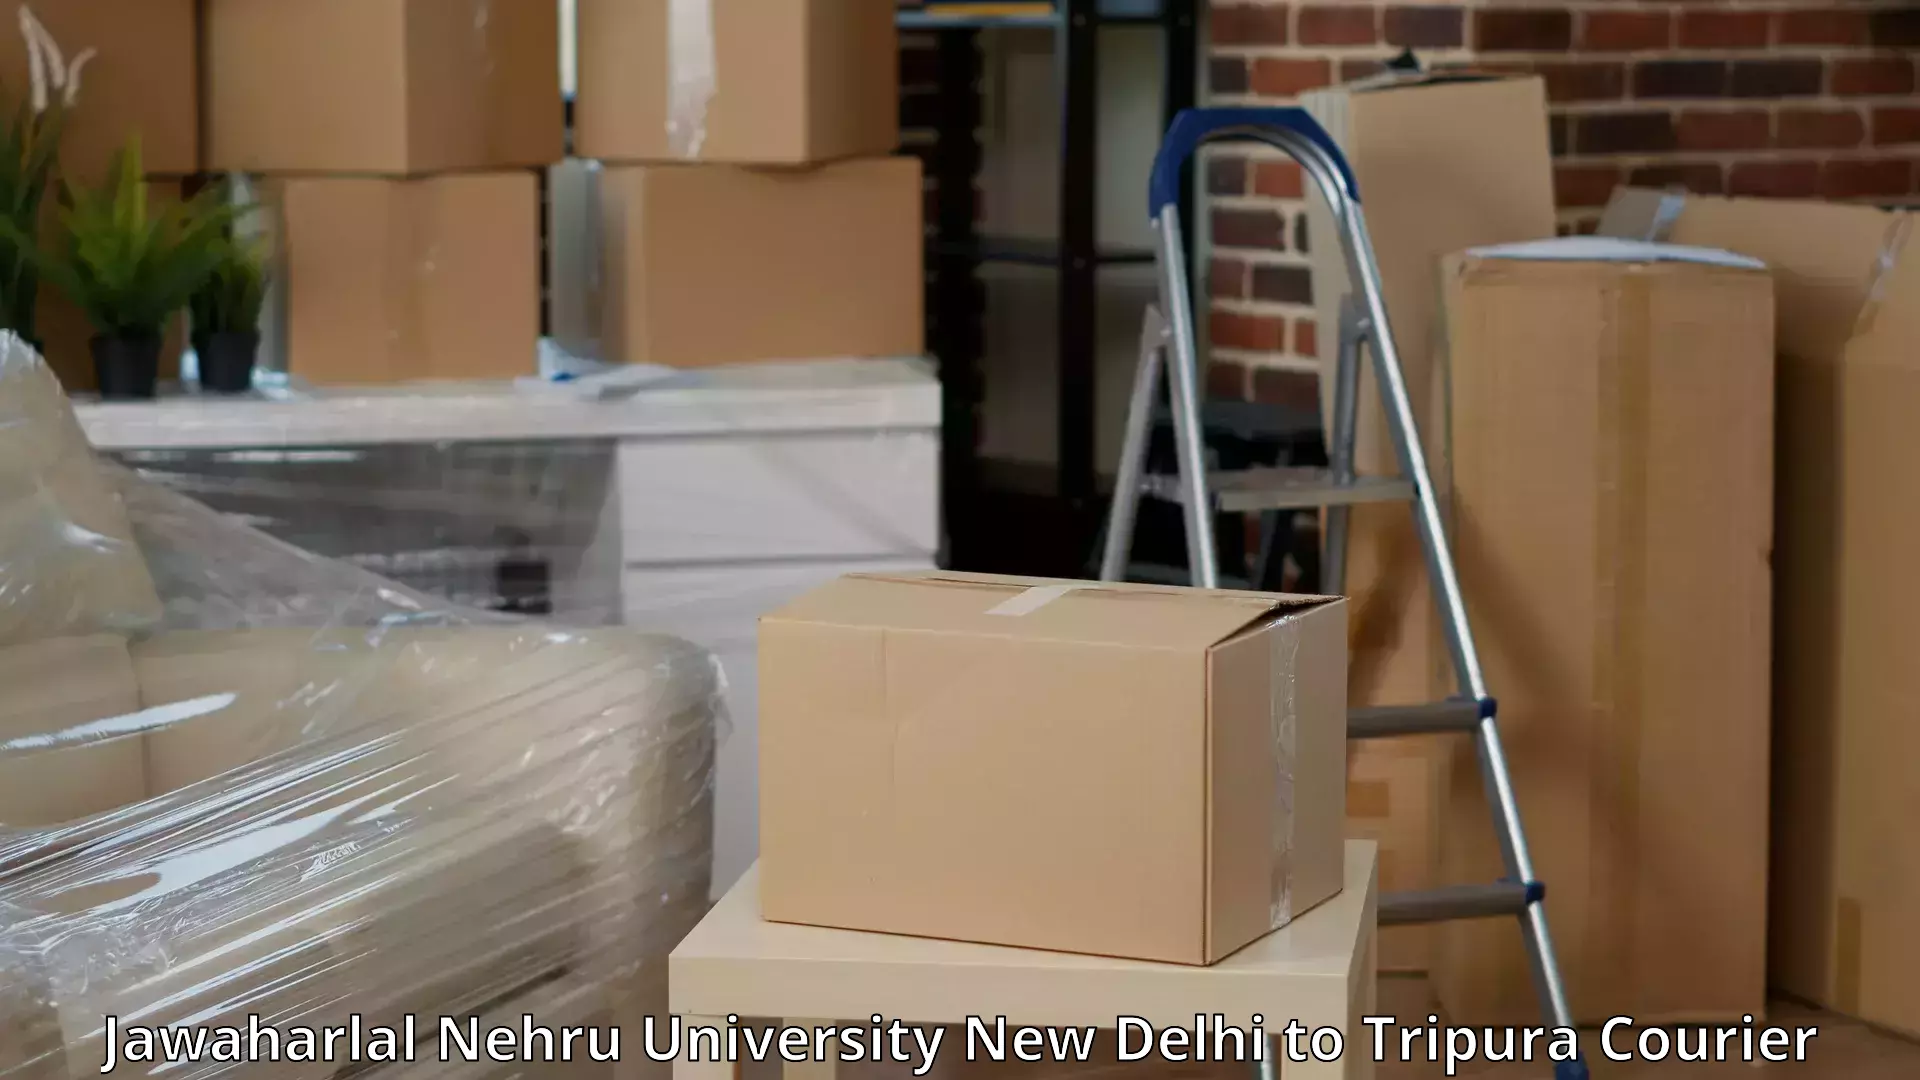 Hassle-free relocation in Jawaharlal Nehru University New Delhi to Kamalpur